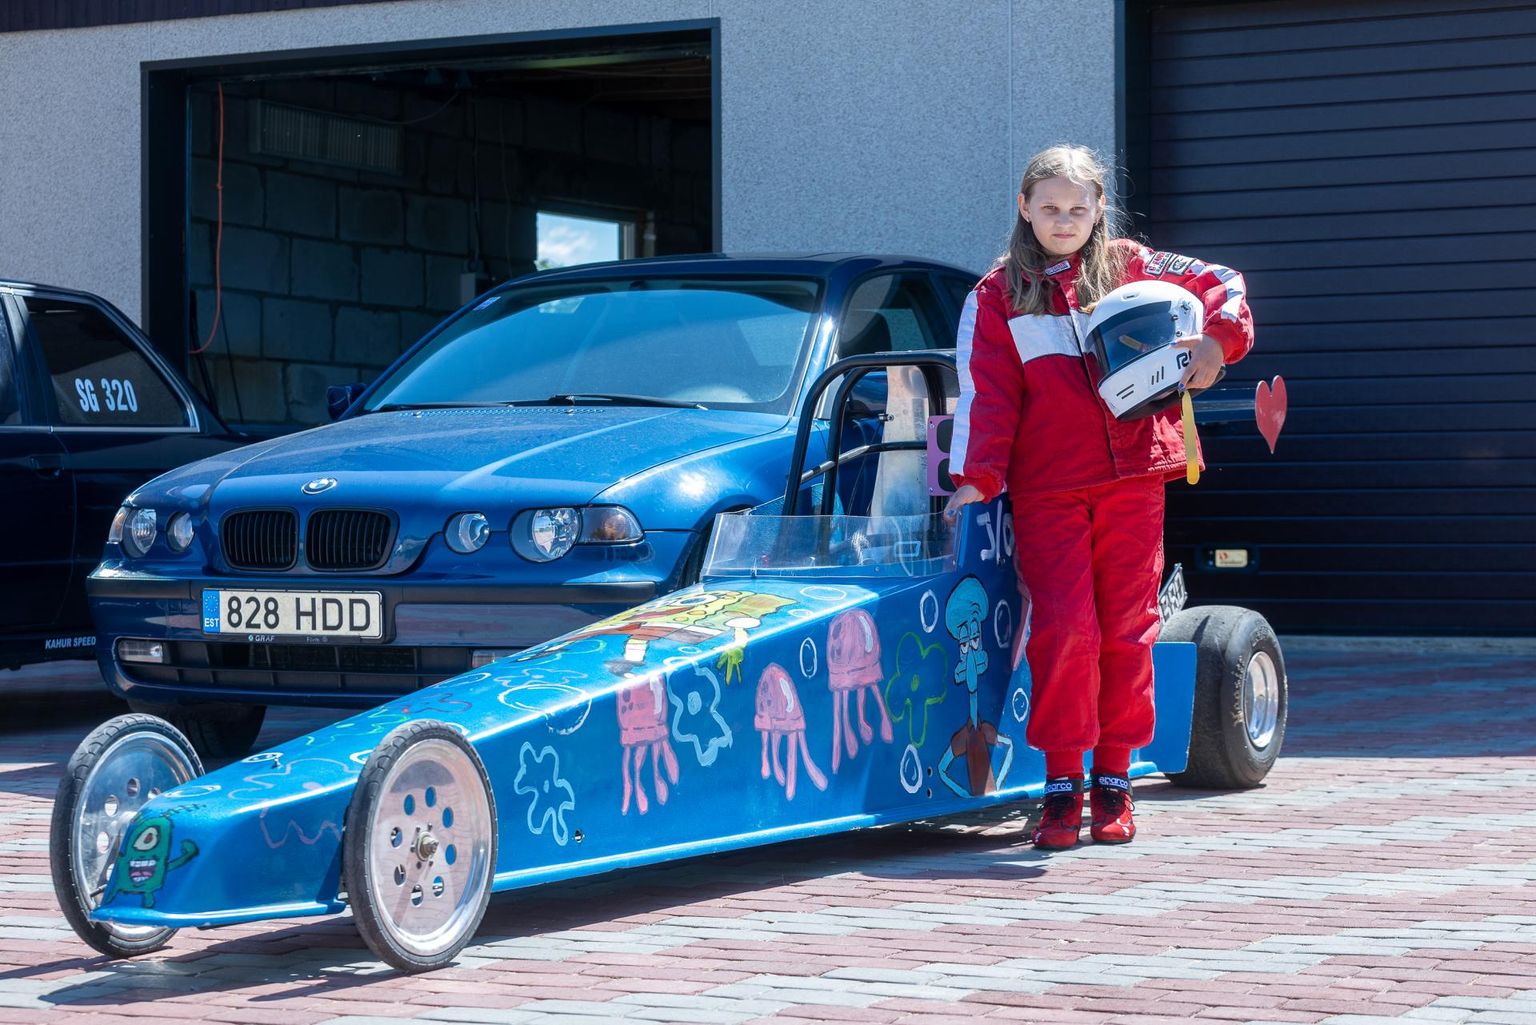 Kui 10-aastane Laura Lükk oma kiirendusauto paari nädala pärast starti lükkab, saab temast ilmselt läbi aegade noorim kiirendussportlane Eestis.